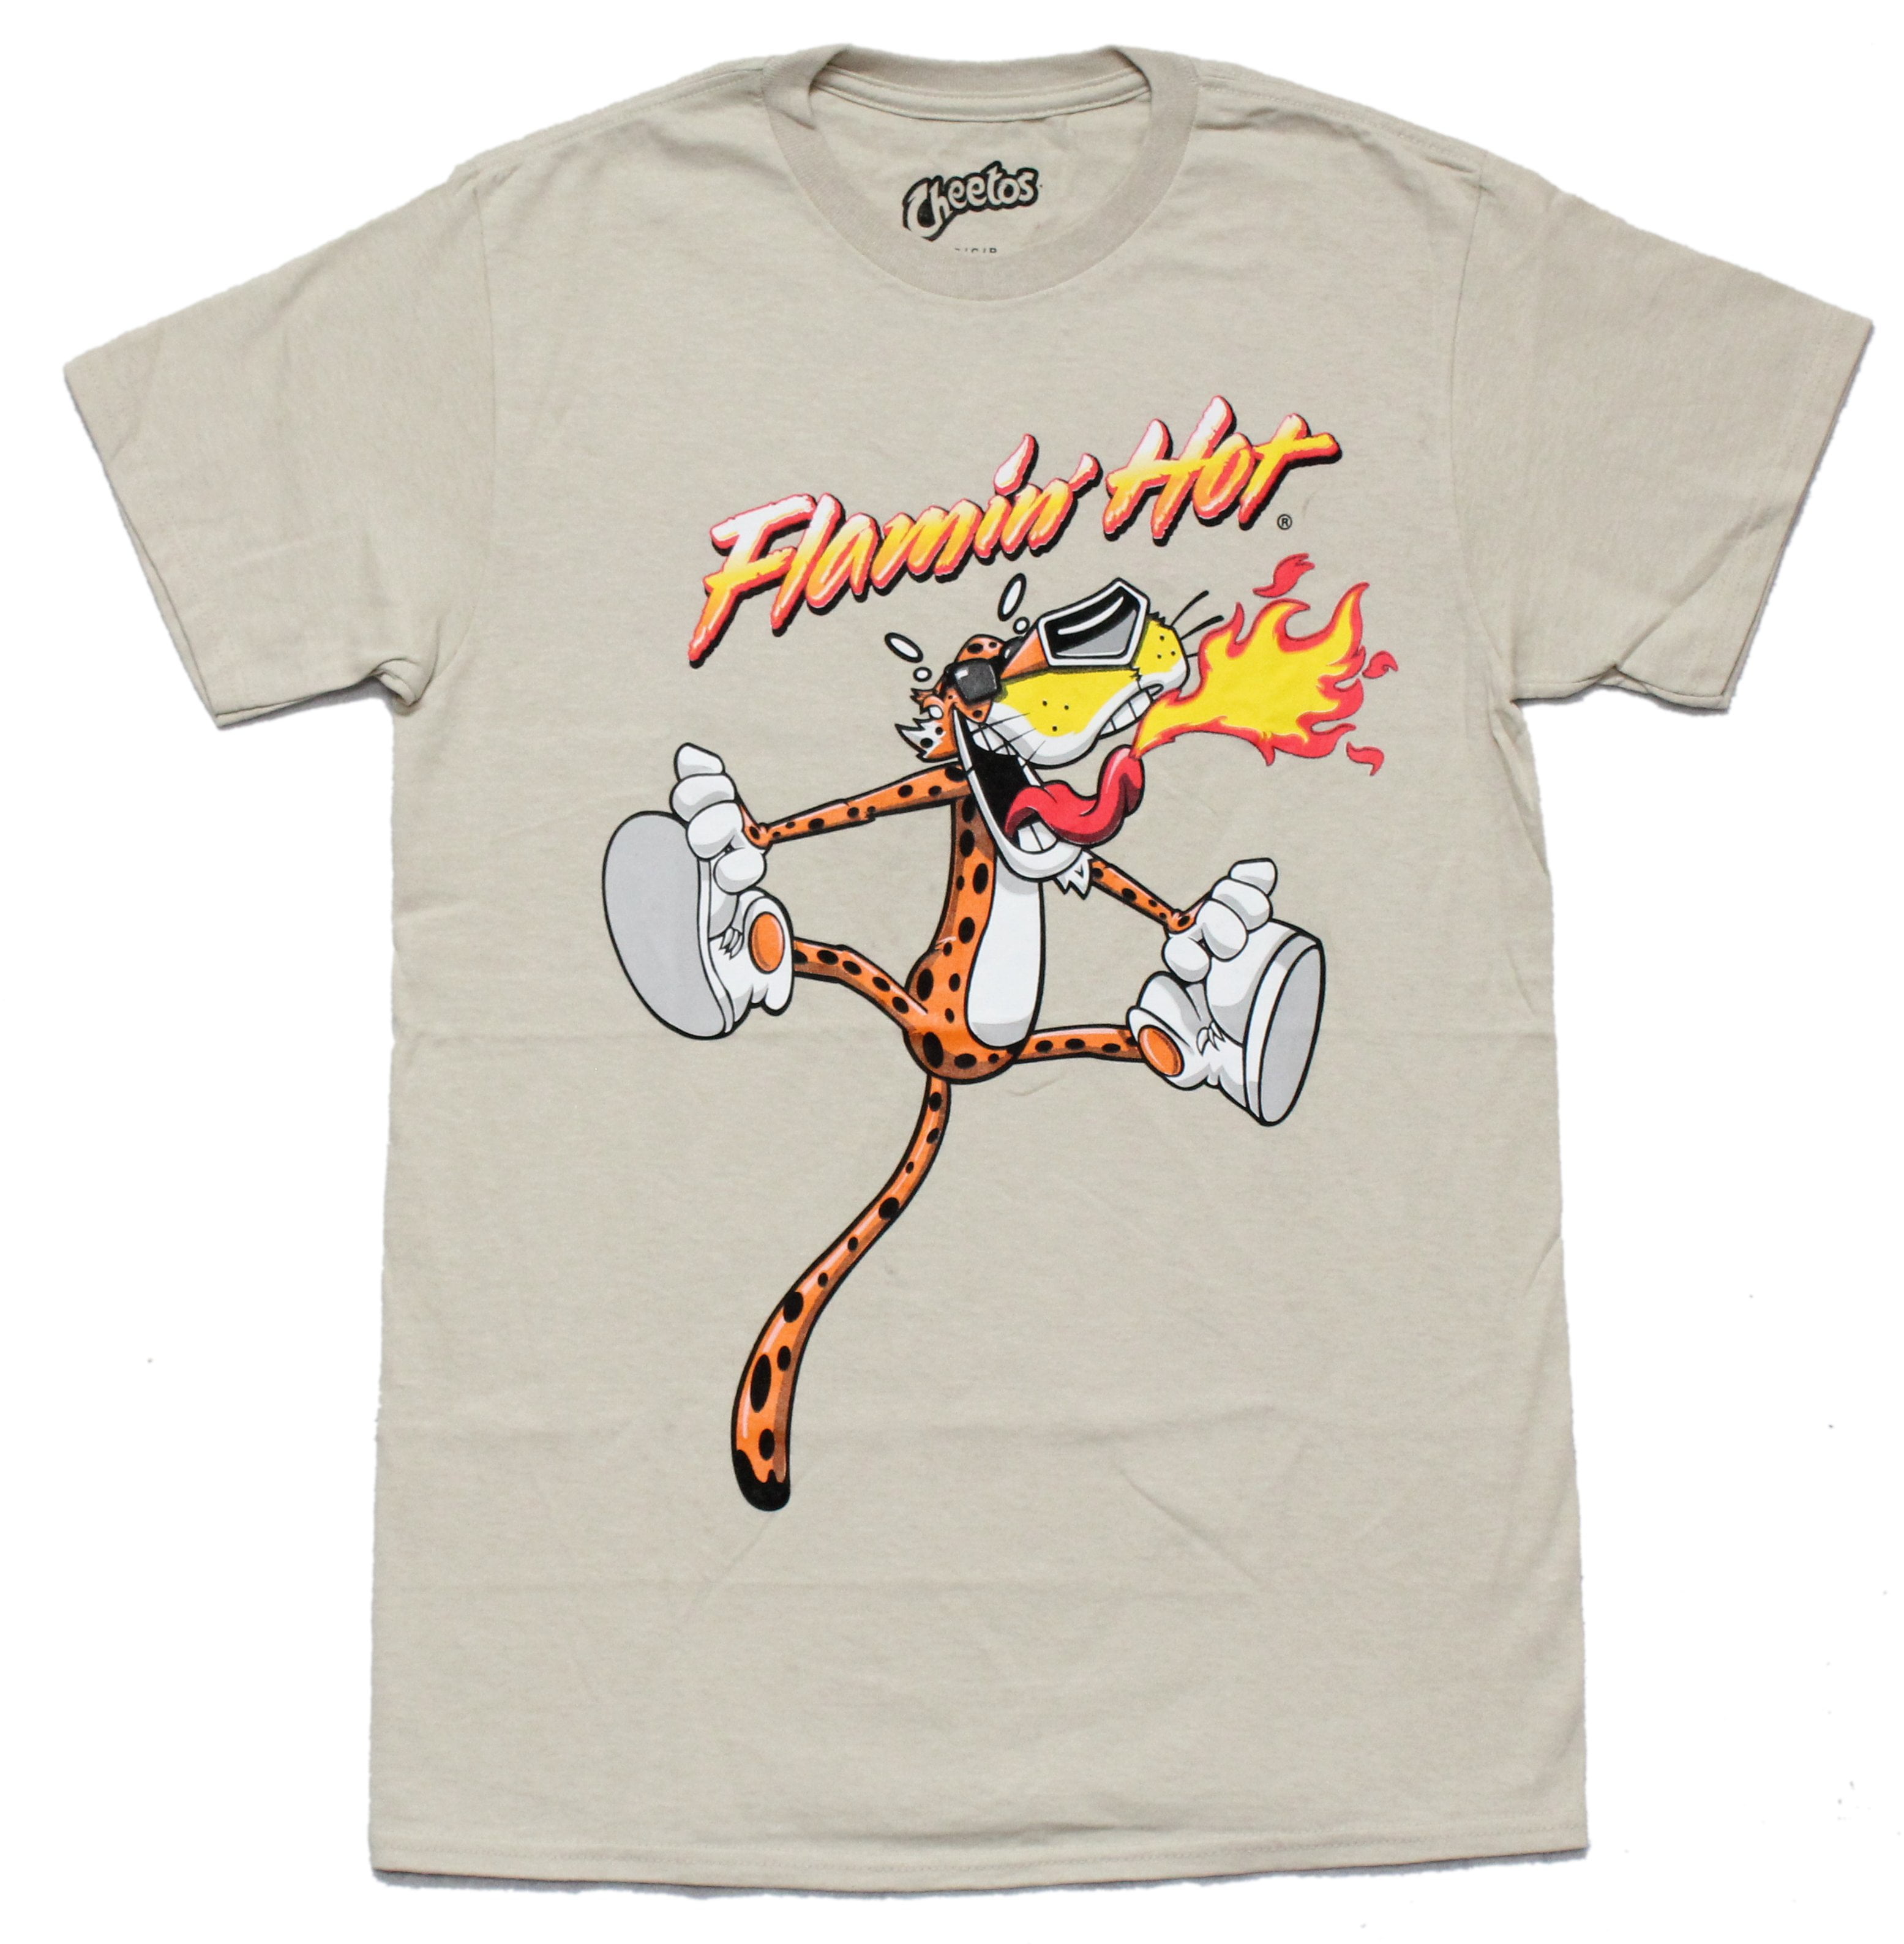  Cheetos Mens Chester Cheetah Shirt - Flamin Hot